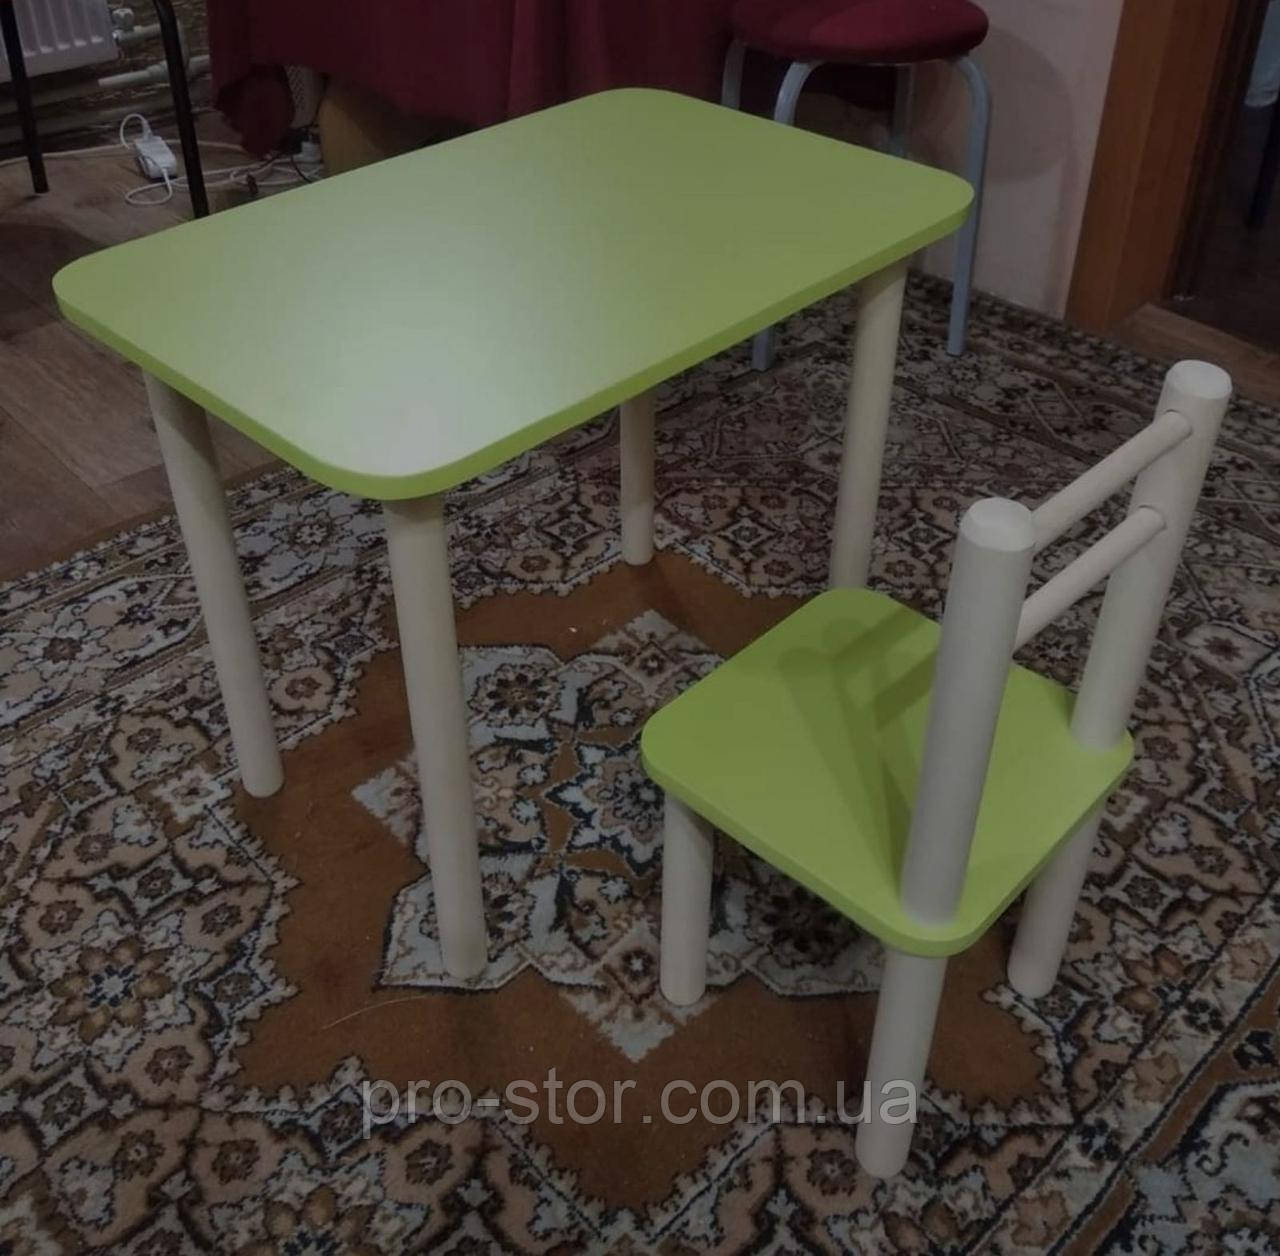 Дитячий столик і стільці від виробника дерева і ЛДСП стілець-стол стіл і стільці для дітей Лайм